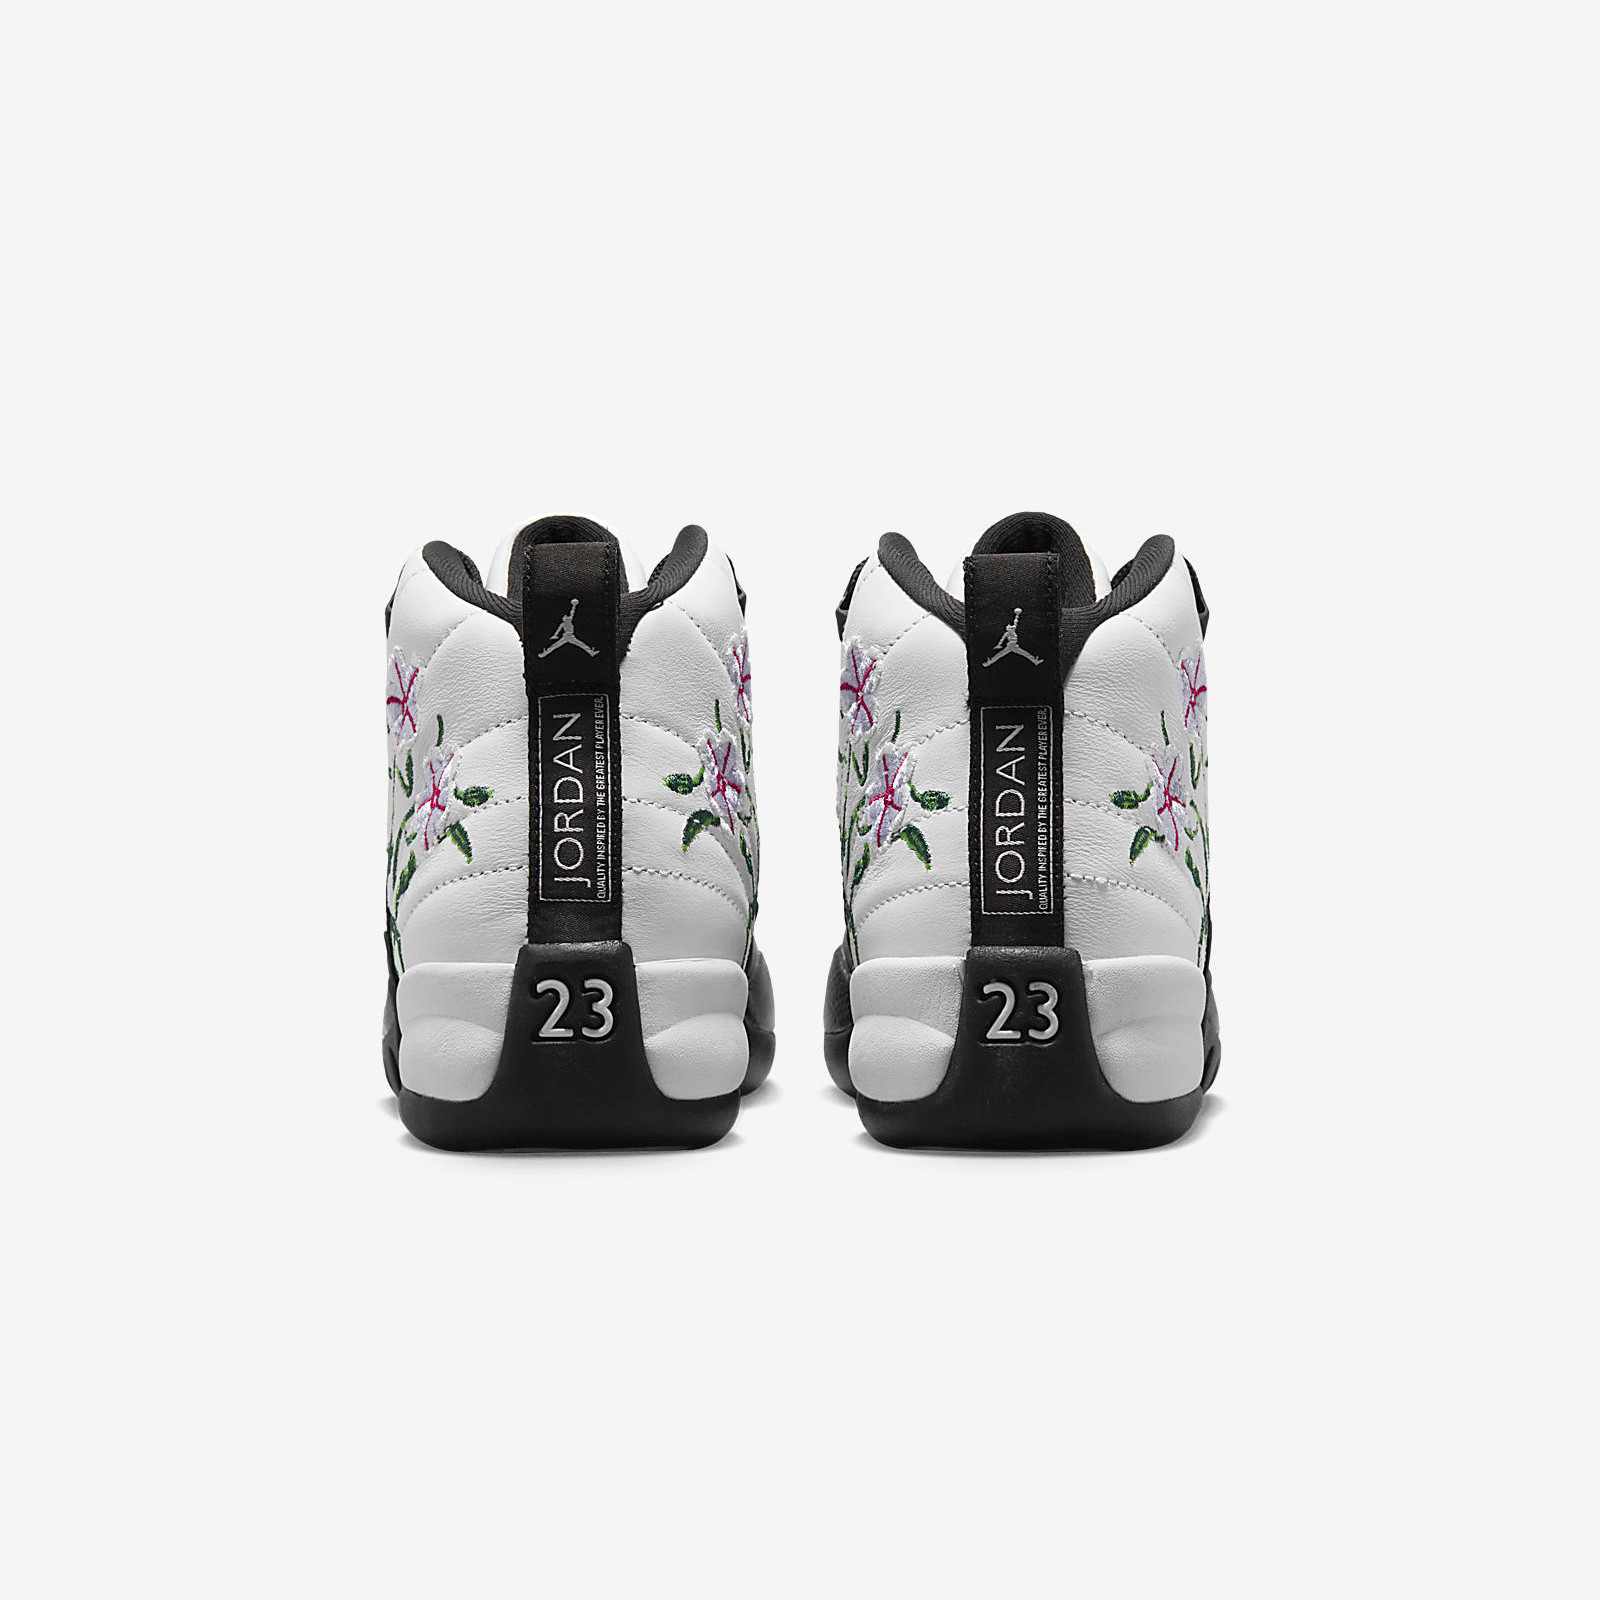 Air Jordan 12 Retro
« Floral »